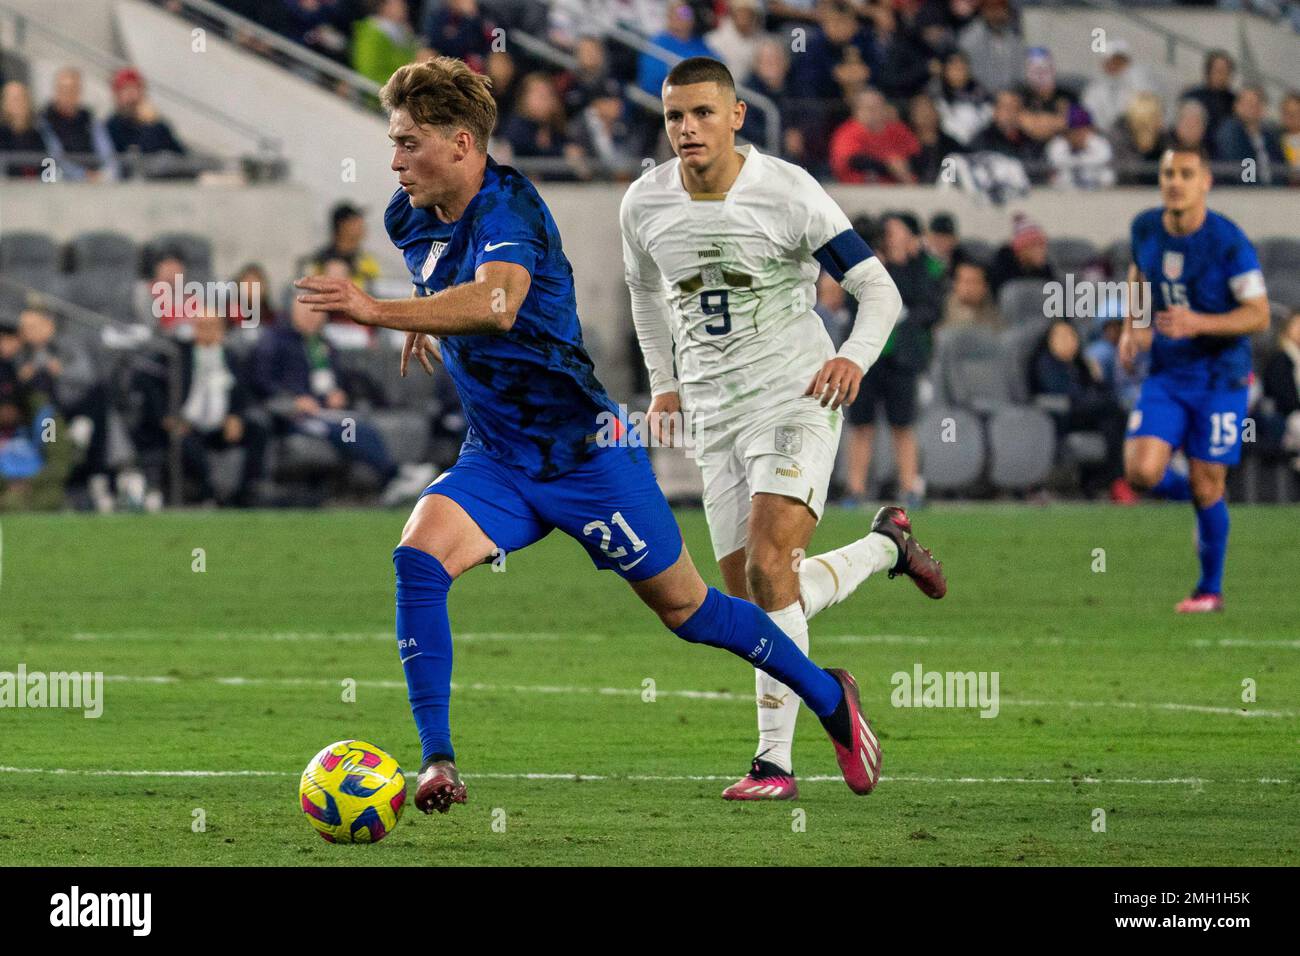 États-Unis d'Amérique le milieu de terrain Aldan Morris (21) pousse après la Serbie en avant Dejan Joveljić (9) lors d'un match international amical, mercredi Banque D'Images